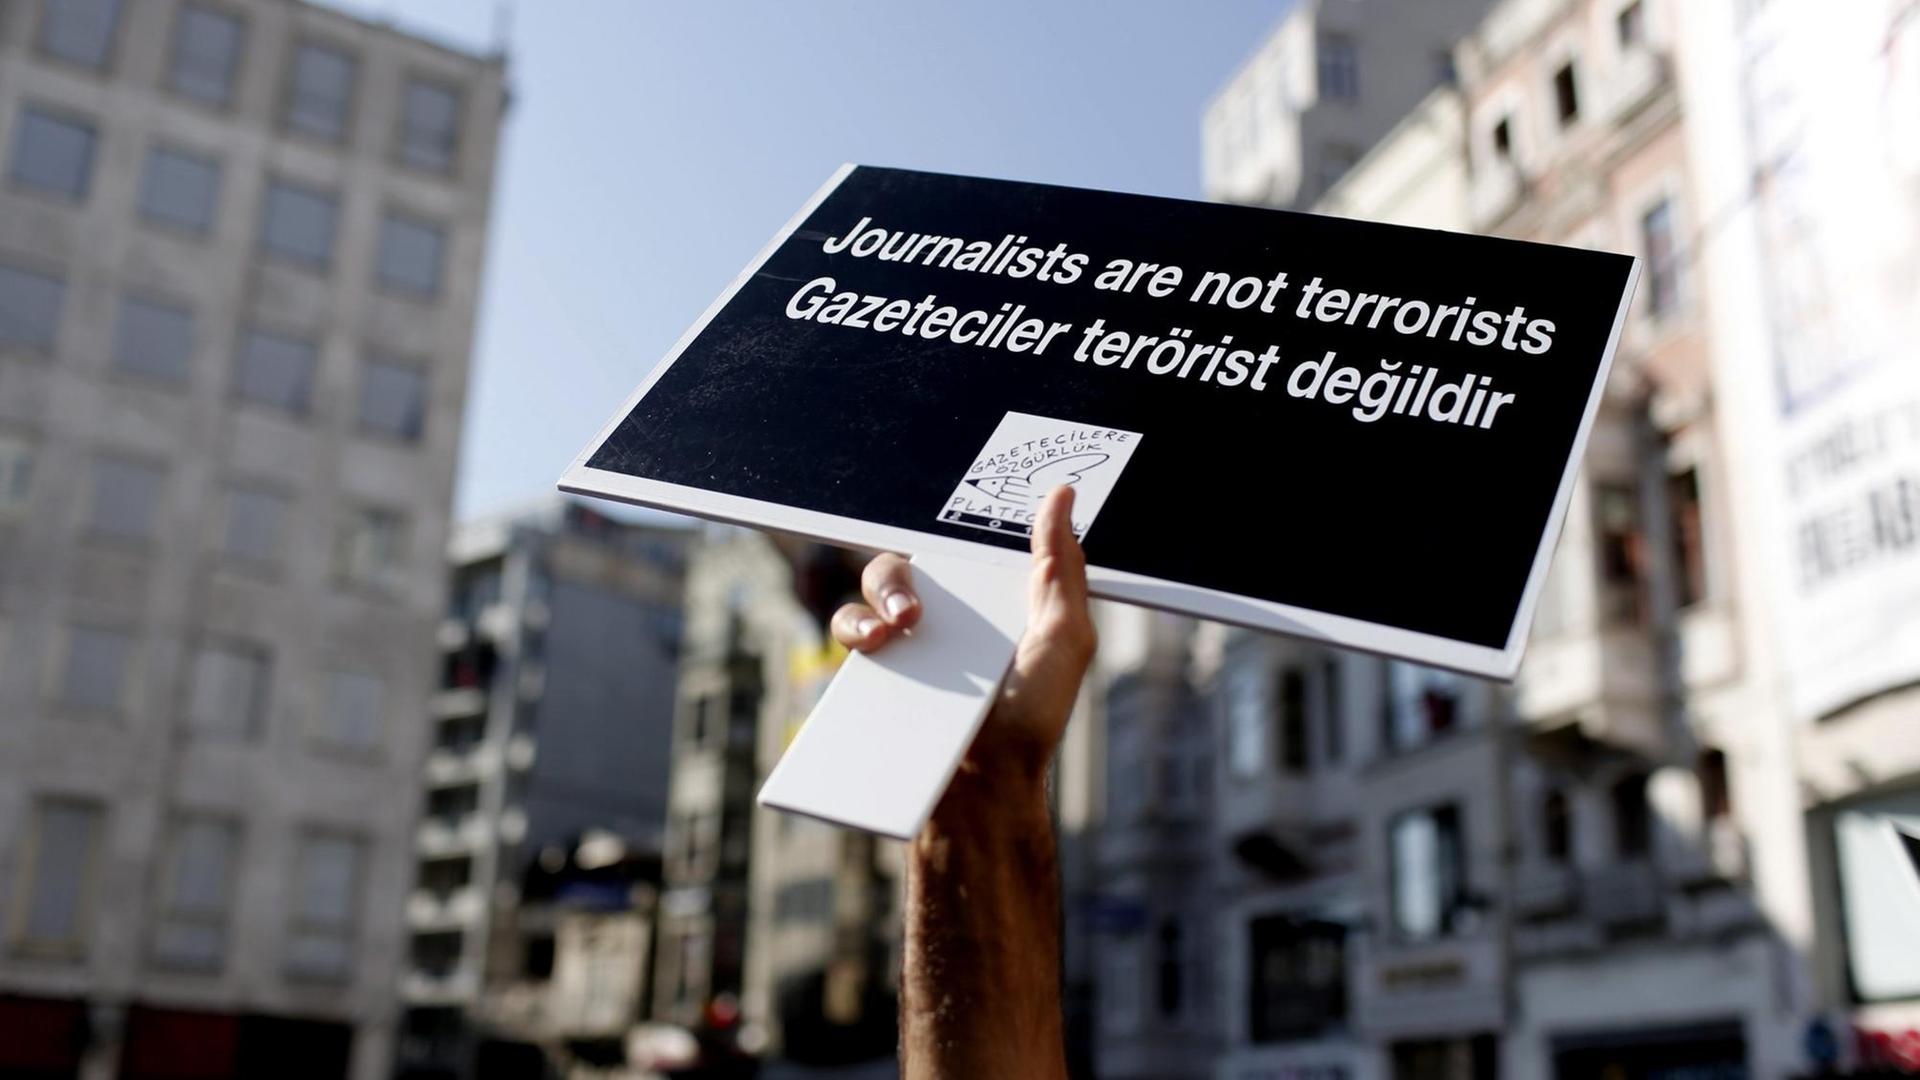 Ein Demonstrant reckt ein Plakat mit der Aufschrift "Journalisten sind keine Terroristen" in die Höhe.